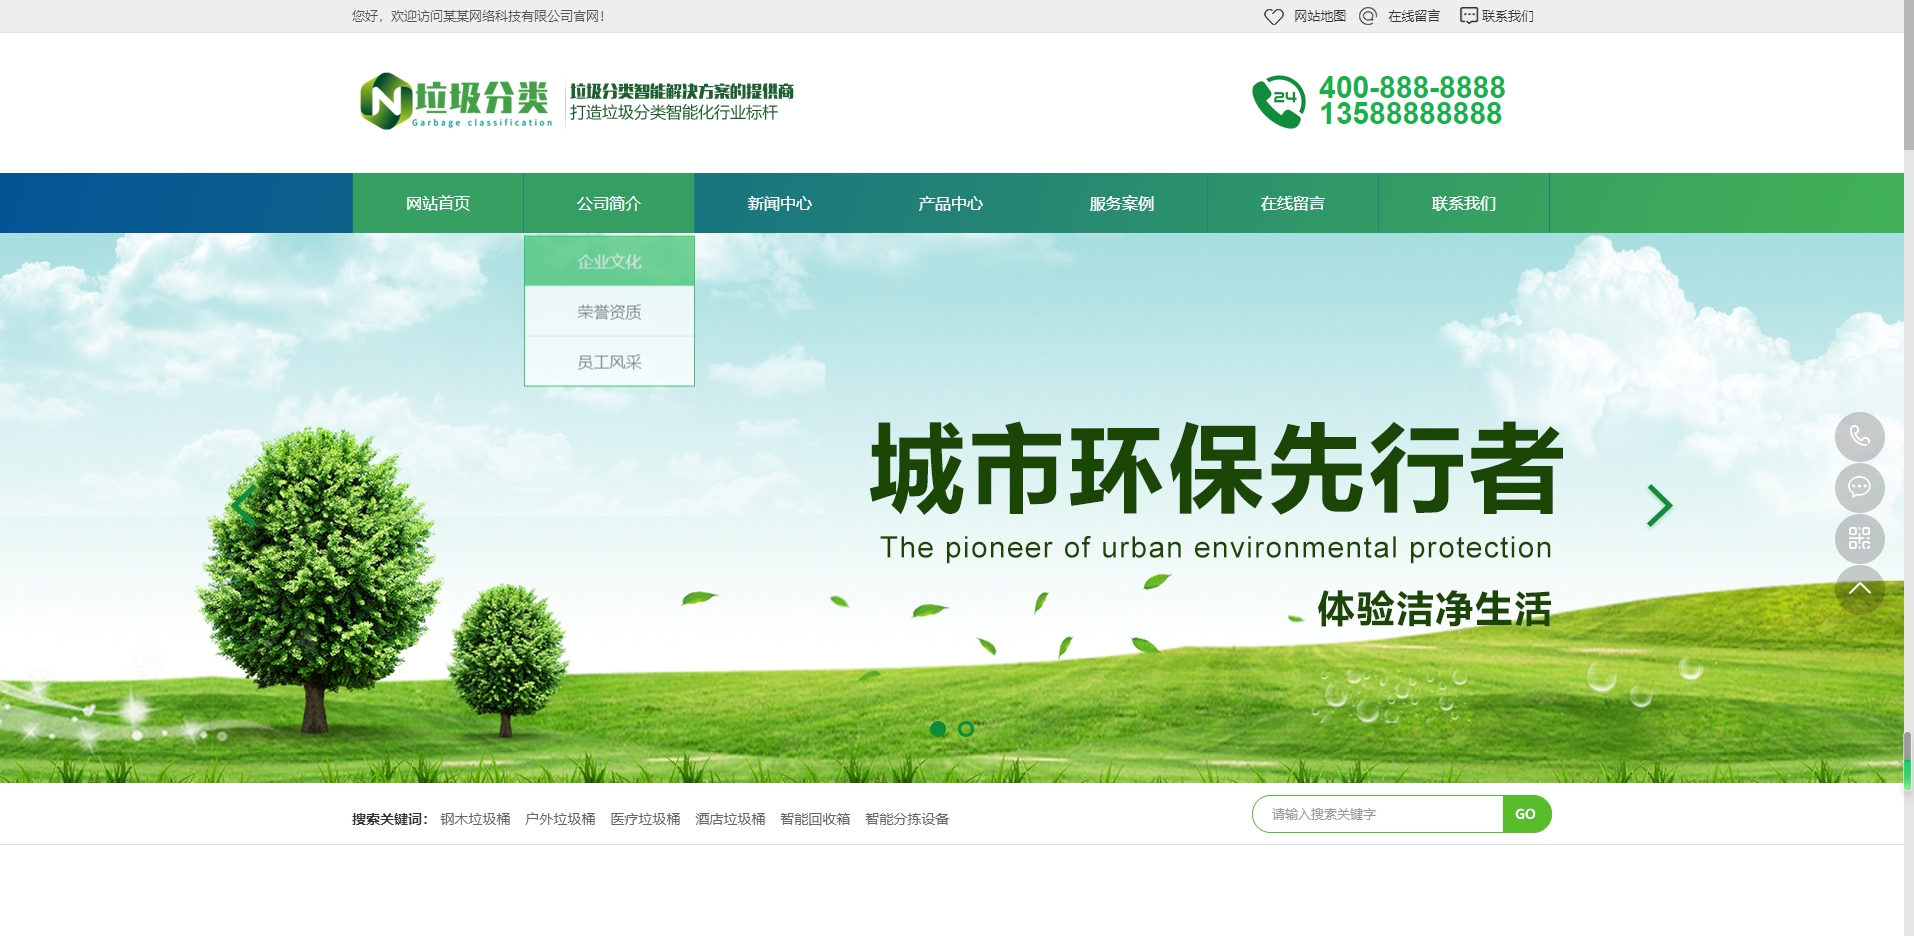 (PC+WAP)垃圾桶设备生产厂家网站pbootcms模板 绿色环保设备网站源码下载gj362